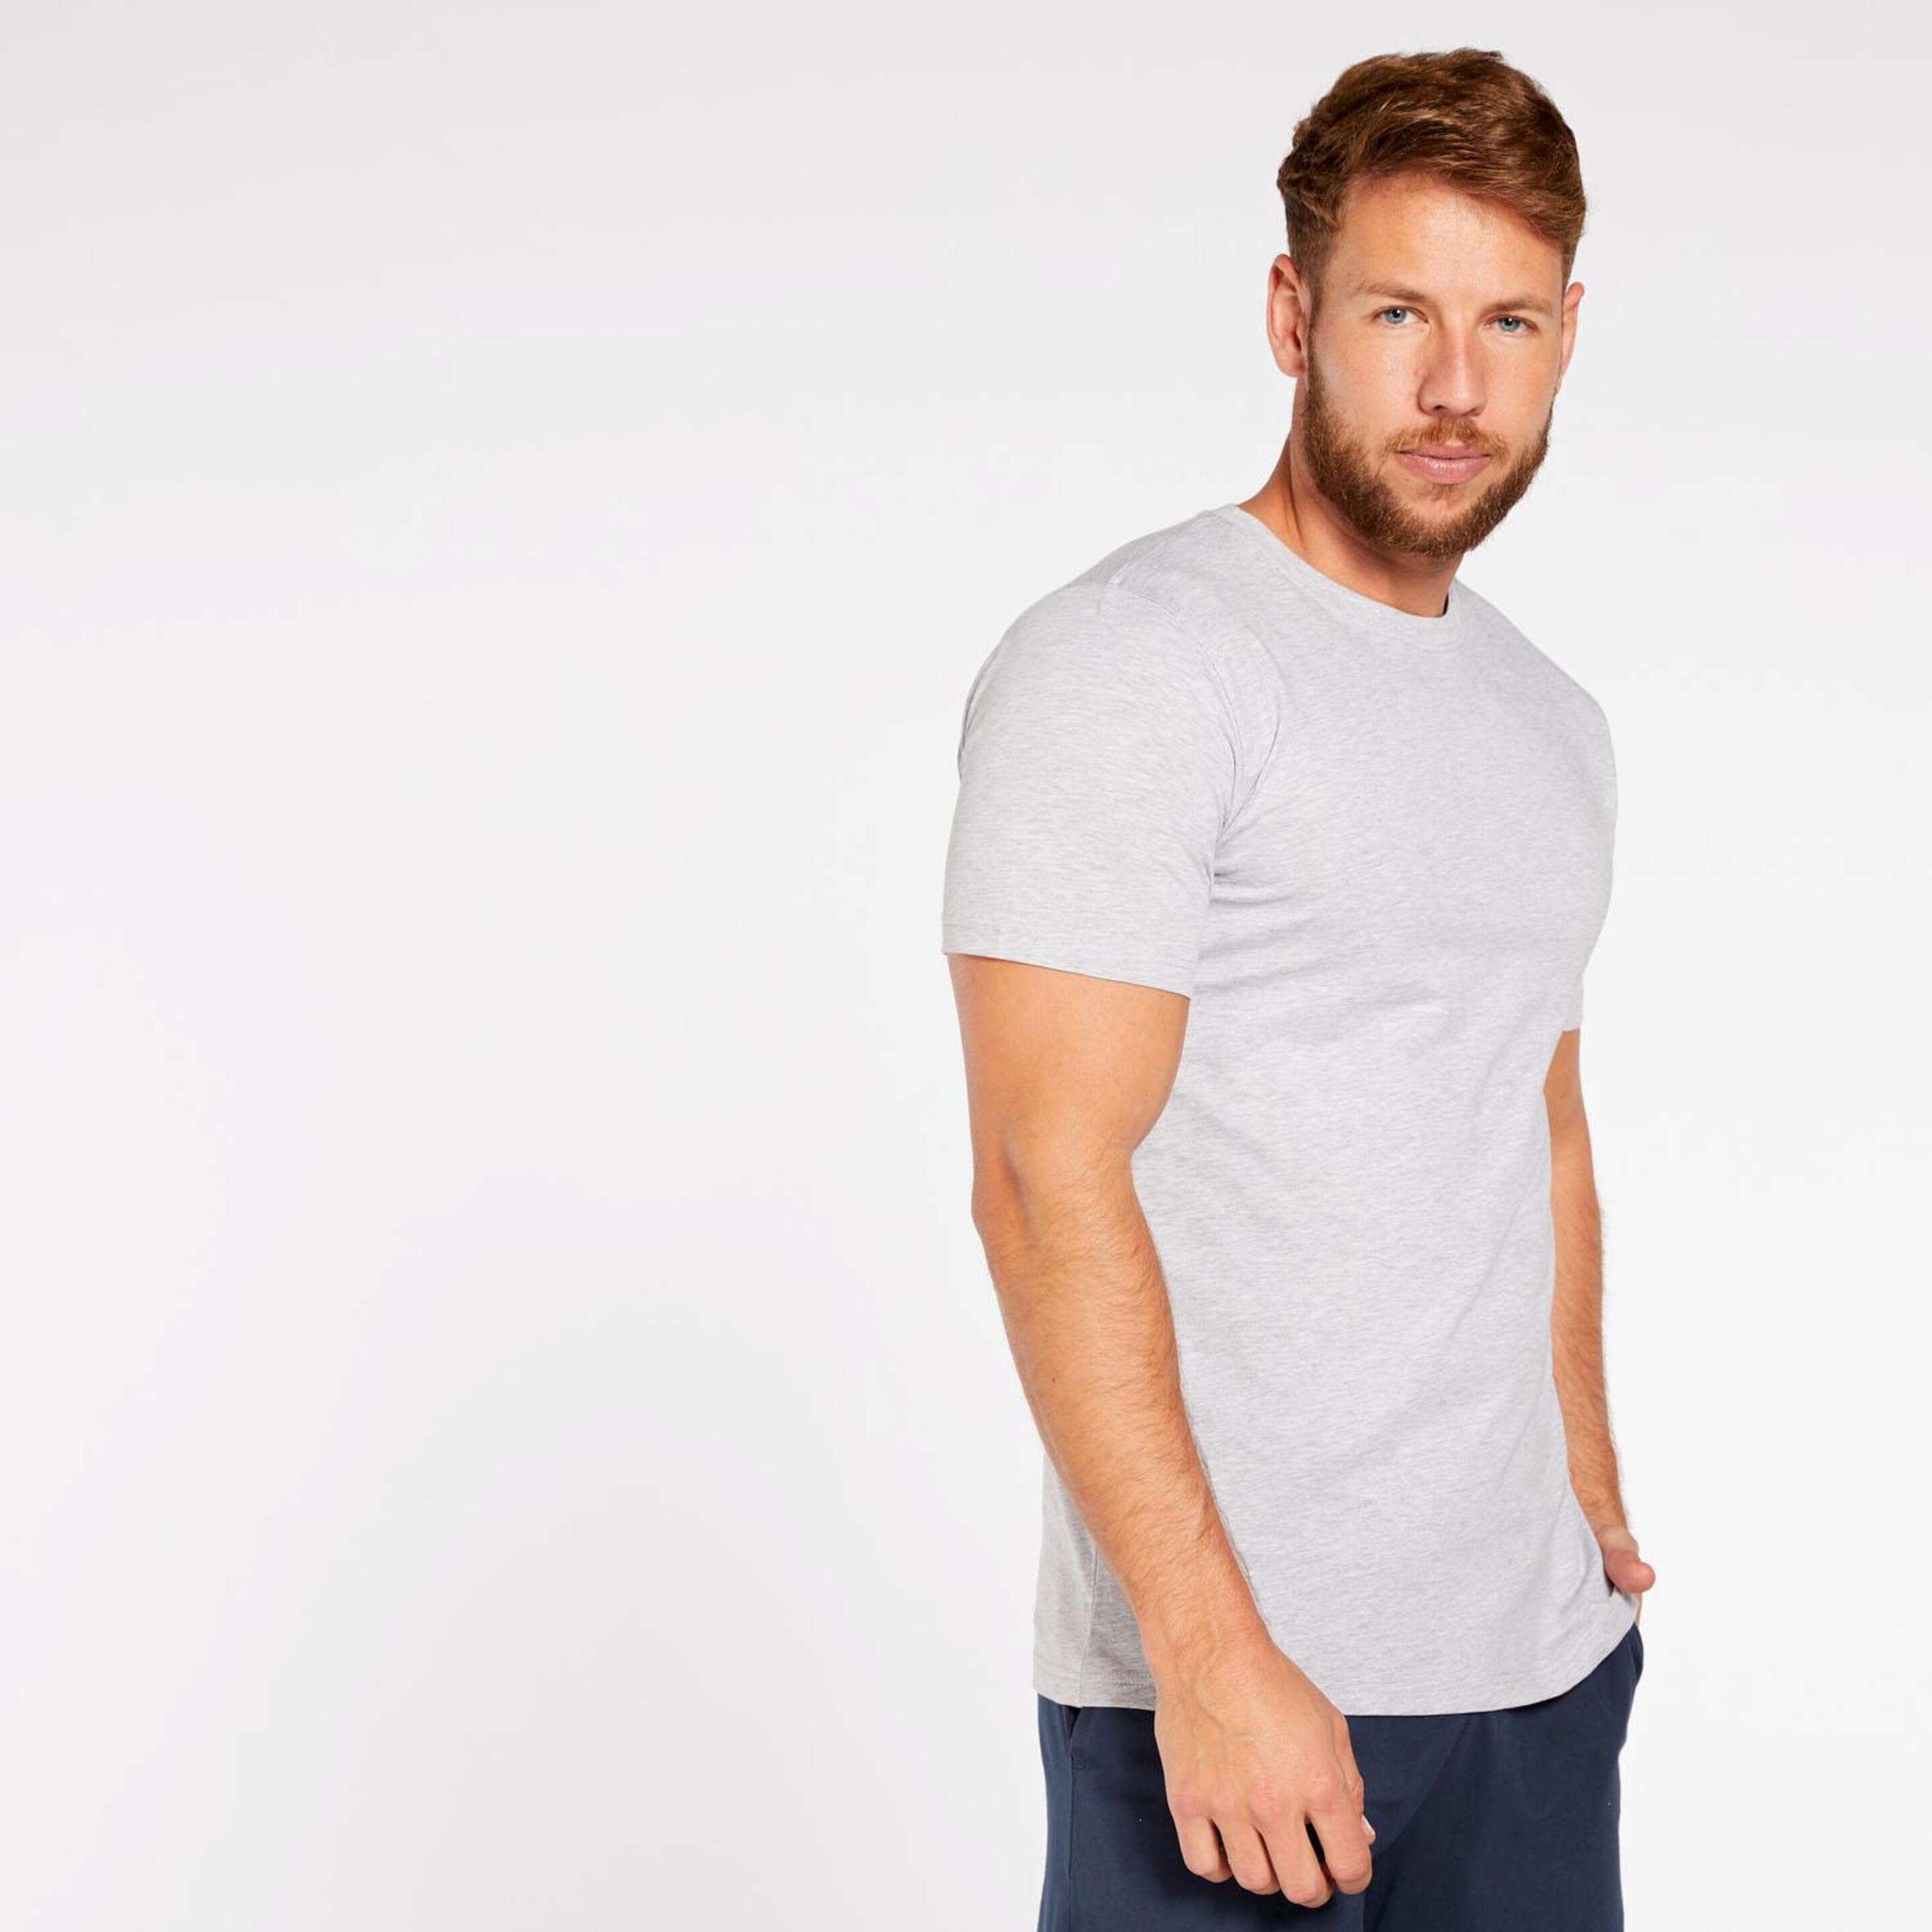 Camiseta Up - gris - Camiseta Hombre